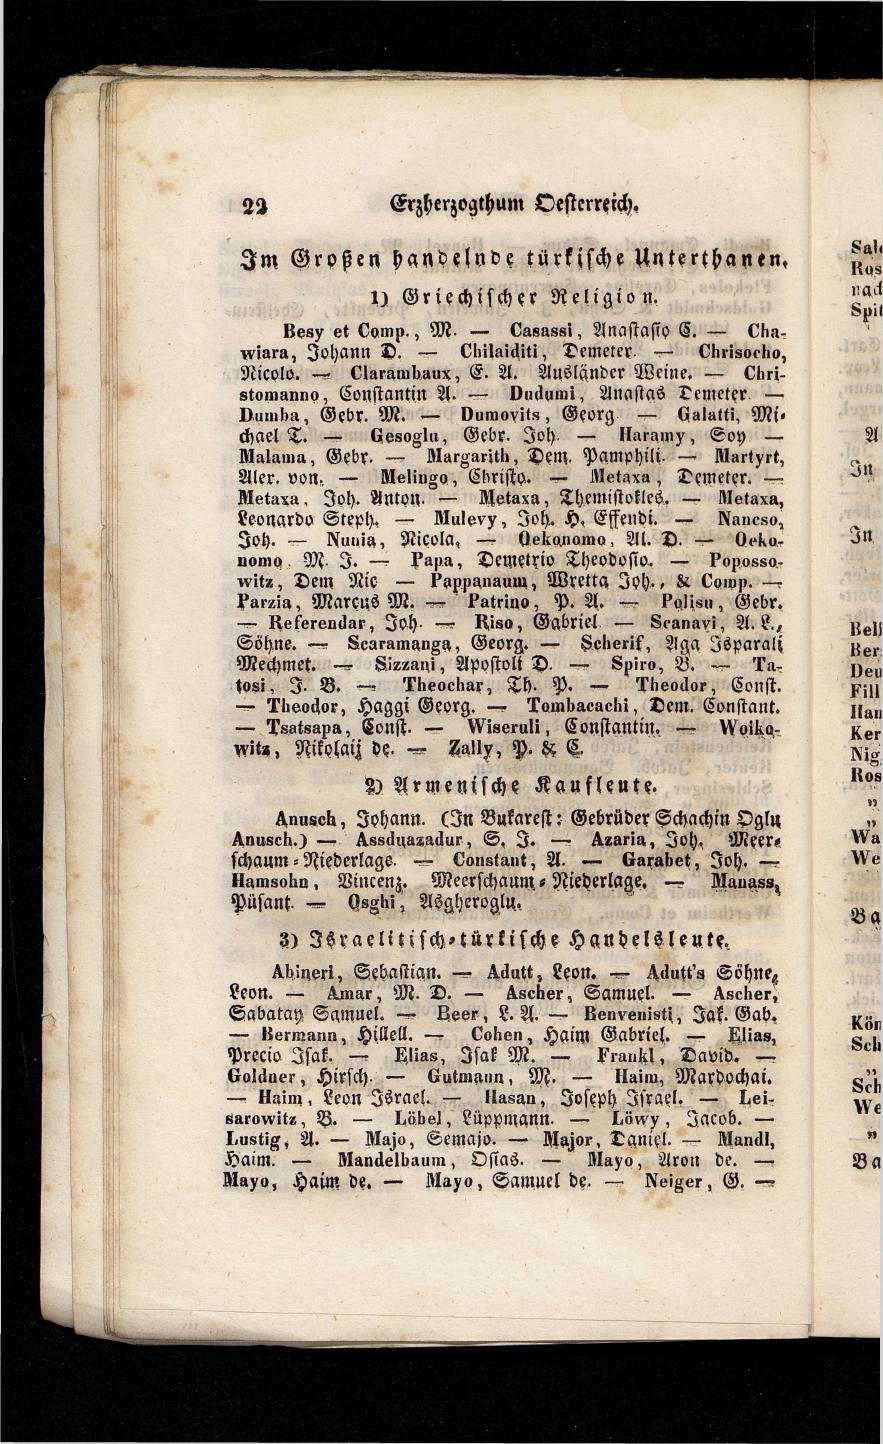 Grosses Adressbuch der Kaufleute. No. 13. Oesterreich ober u. unter der Enns 1844 - Seite 26